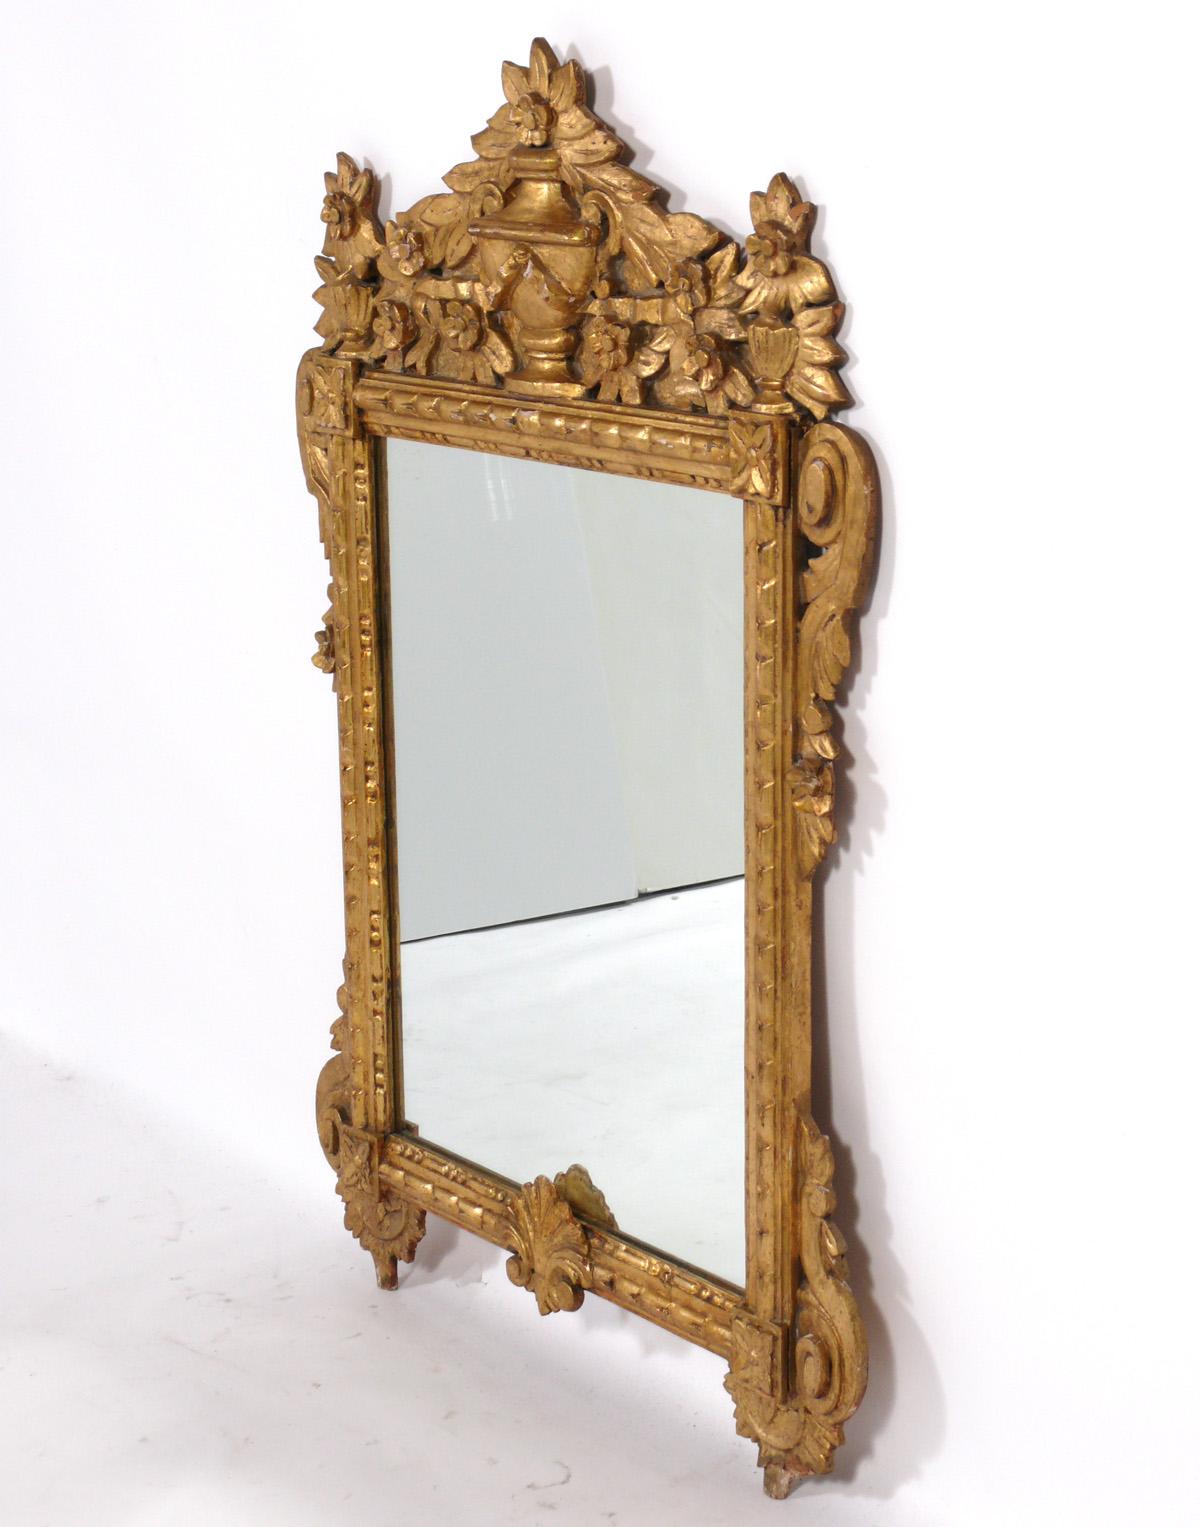 Miroir italien en bois doré, Italie, vers 1950. Ce miroir a été récemment retiré du légendaire hôtel Carlyle à New York. Il mesure une hauteur impressionnante de 47,75 pouces et une largeur de 30,5 pouces.